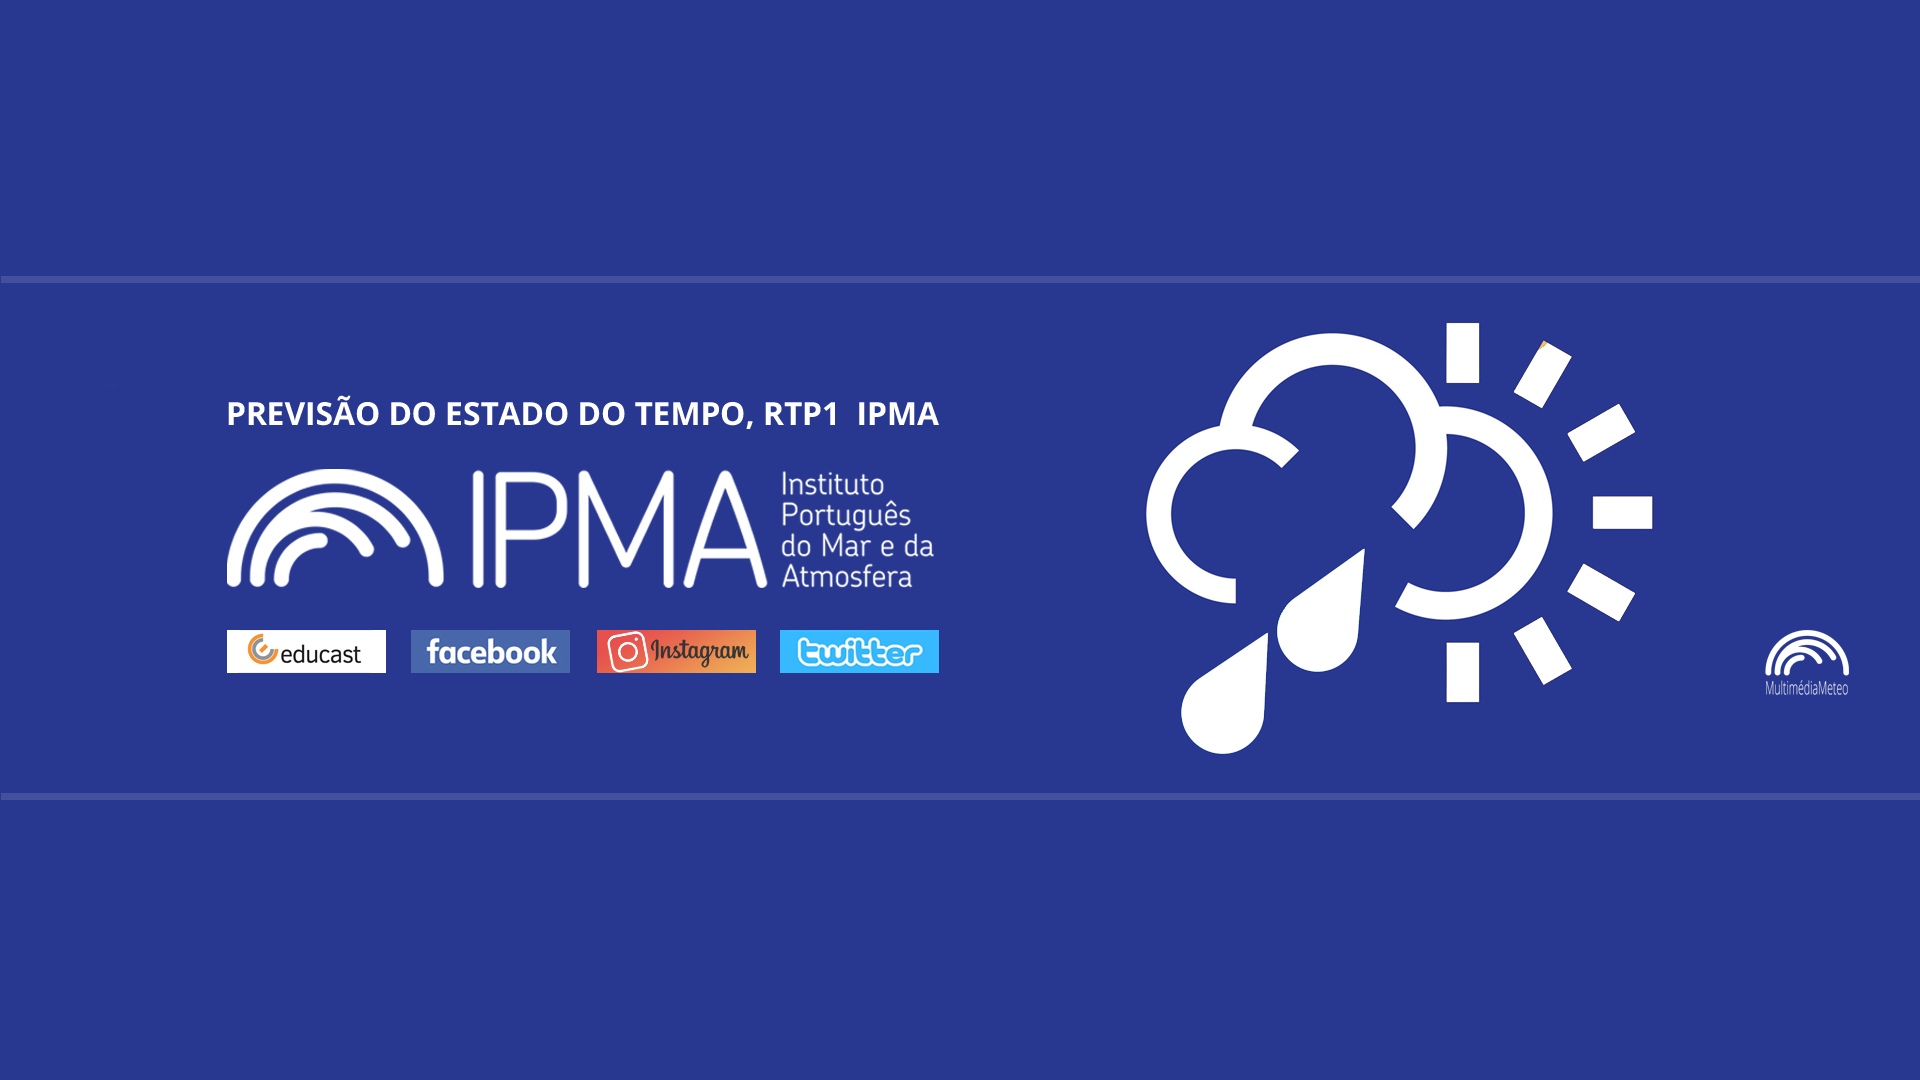  Previsão do estado do tempo, RTP1, 03-02-2022, IPMA